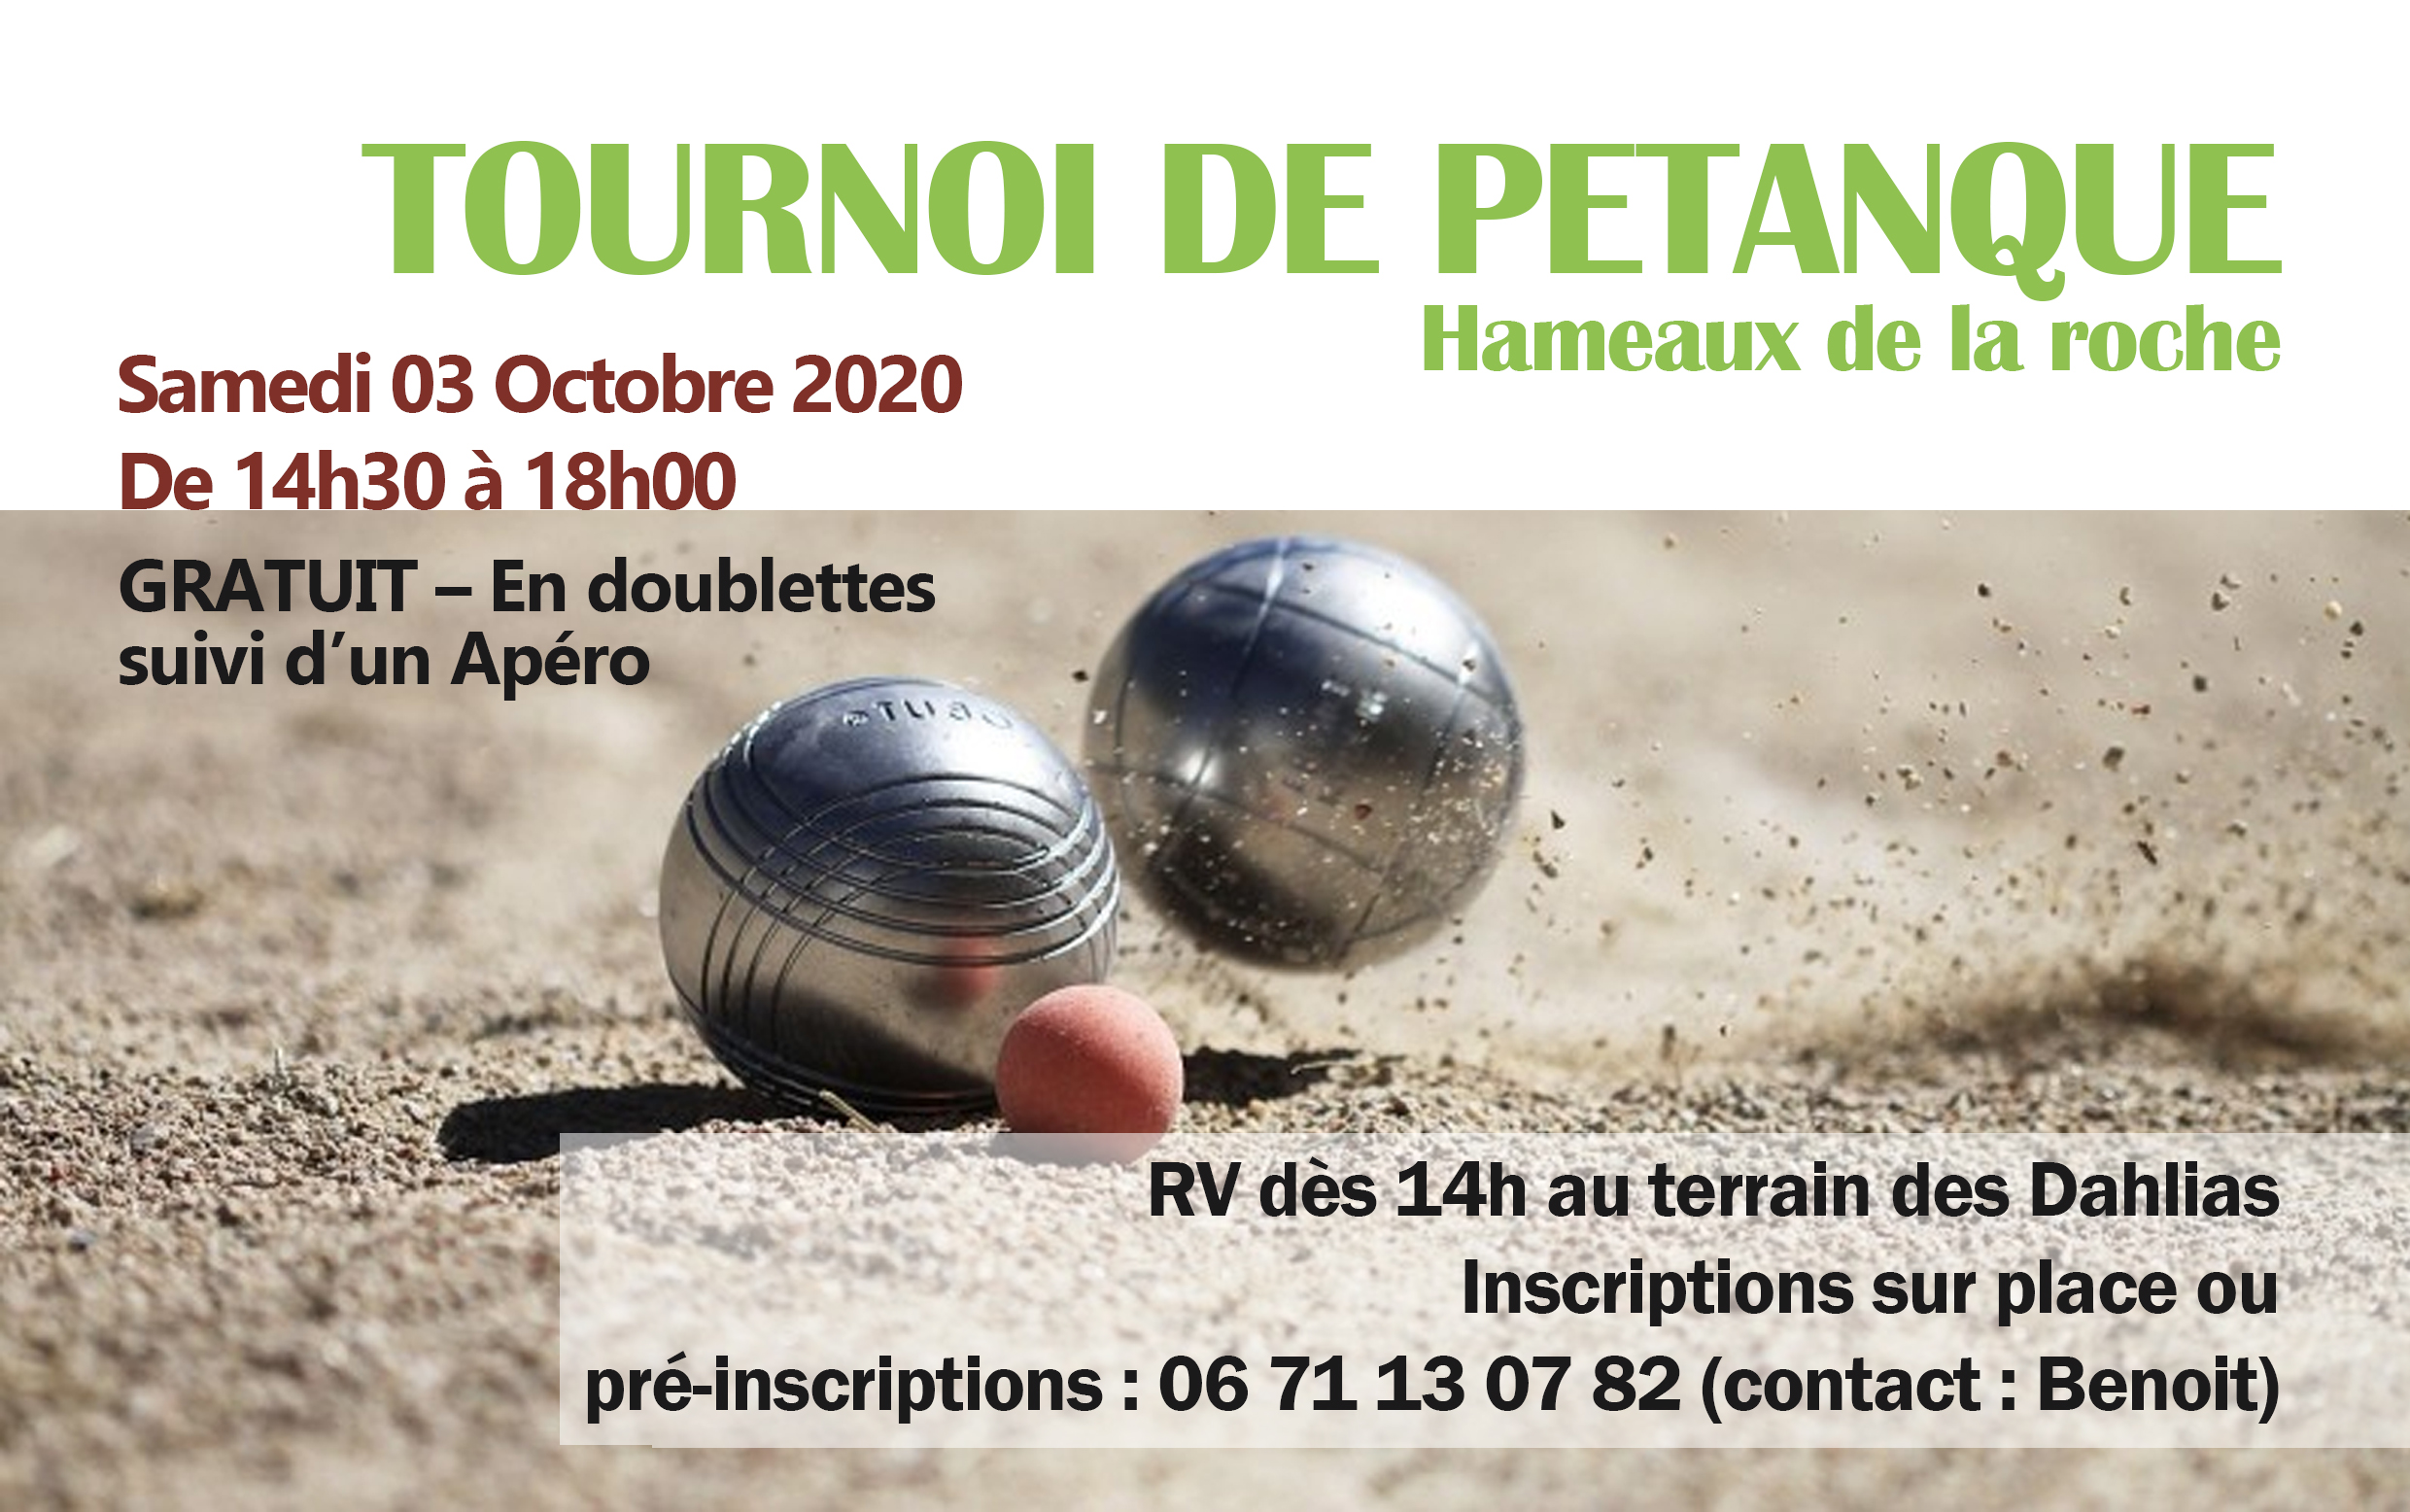 TOURNOI DE PÉTANQUE samedi 3 octobre 2020 aux Hameaux de la Roche